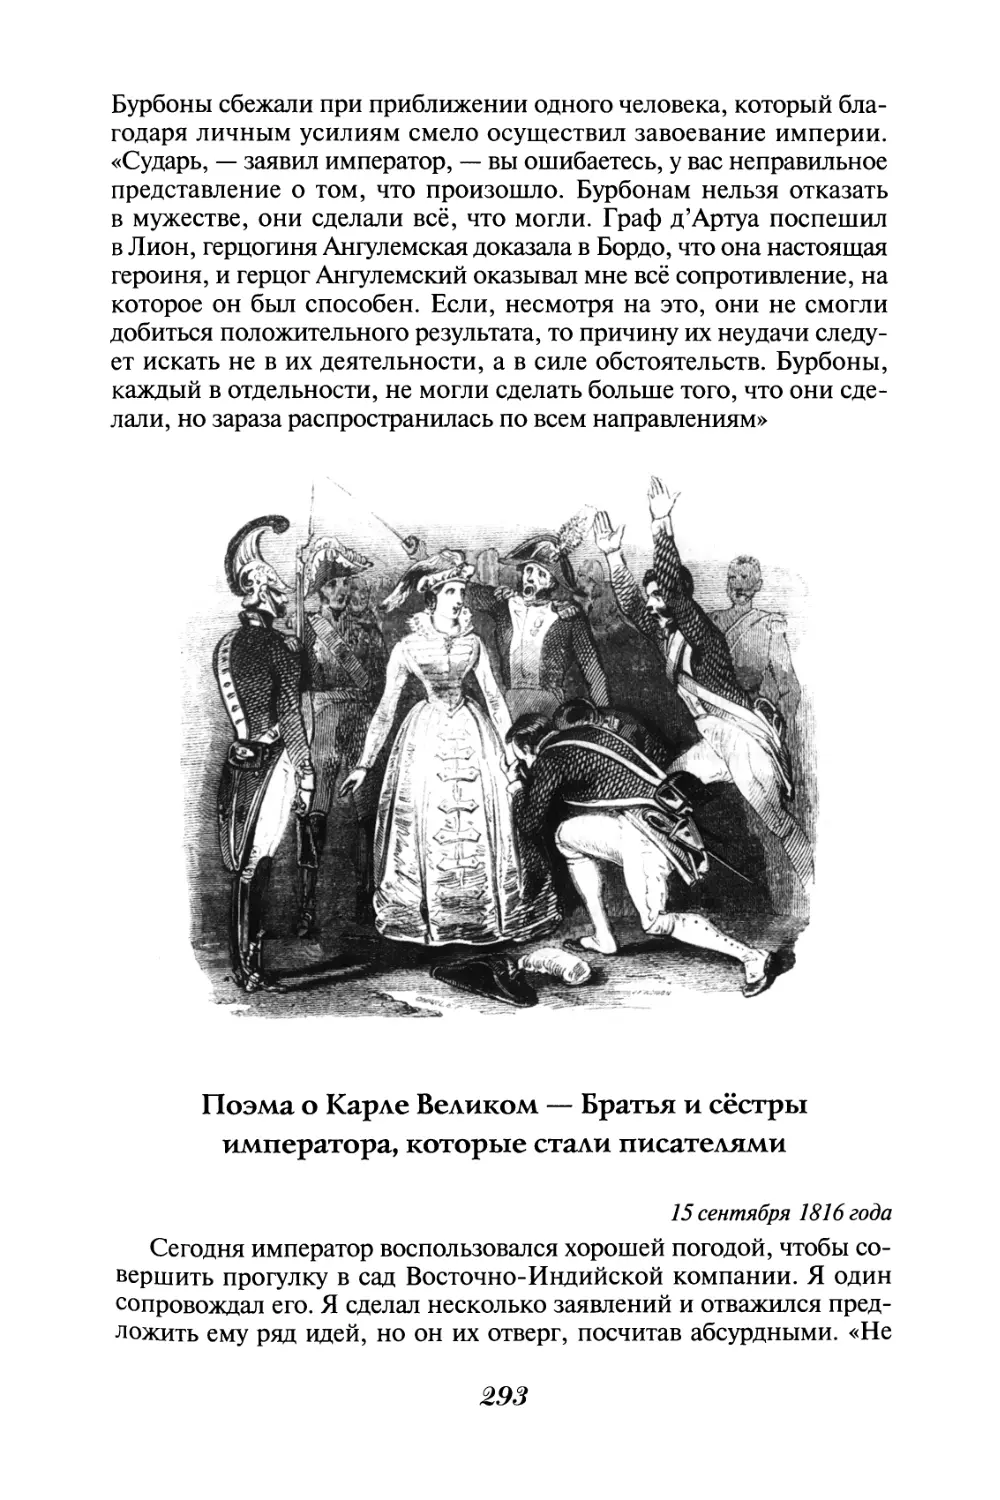 Поэма о Карле Великом - Братья и сёстры императора, которые стали писателями 15 сентября 1816 года